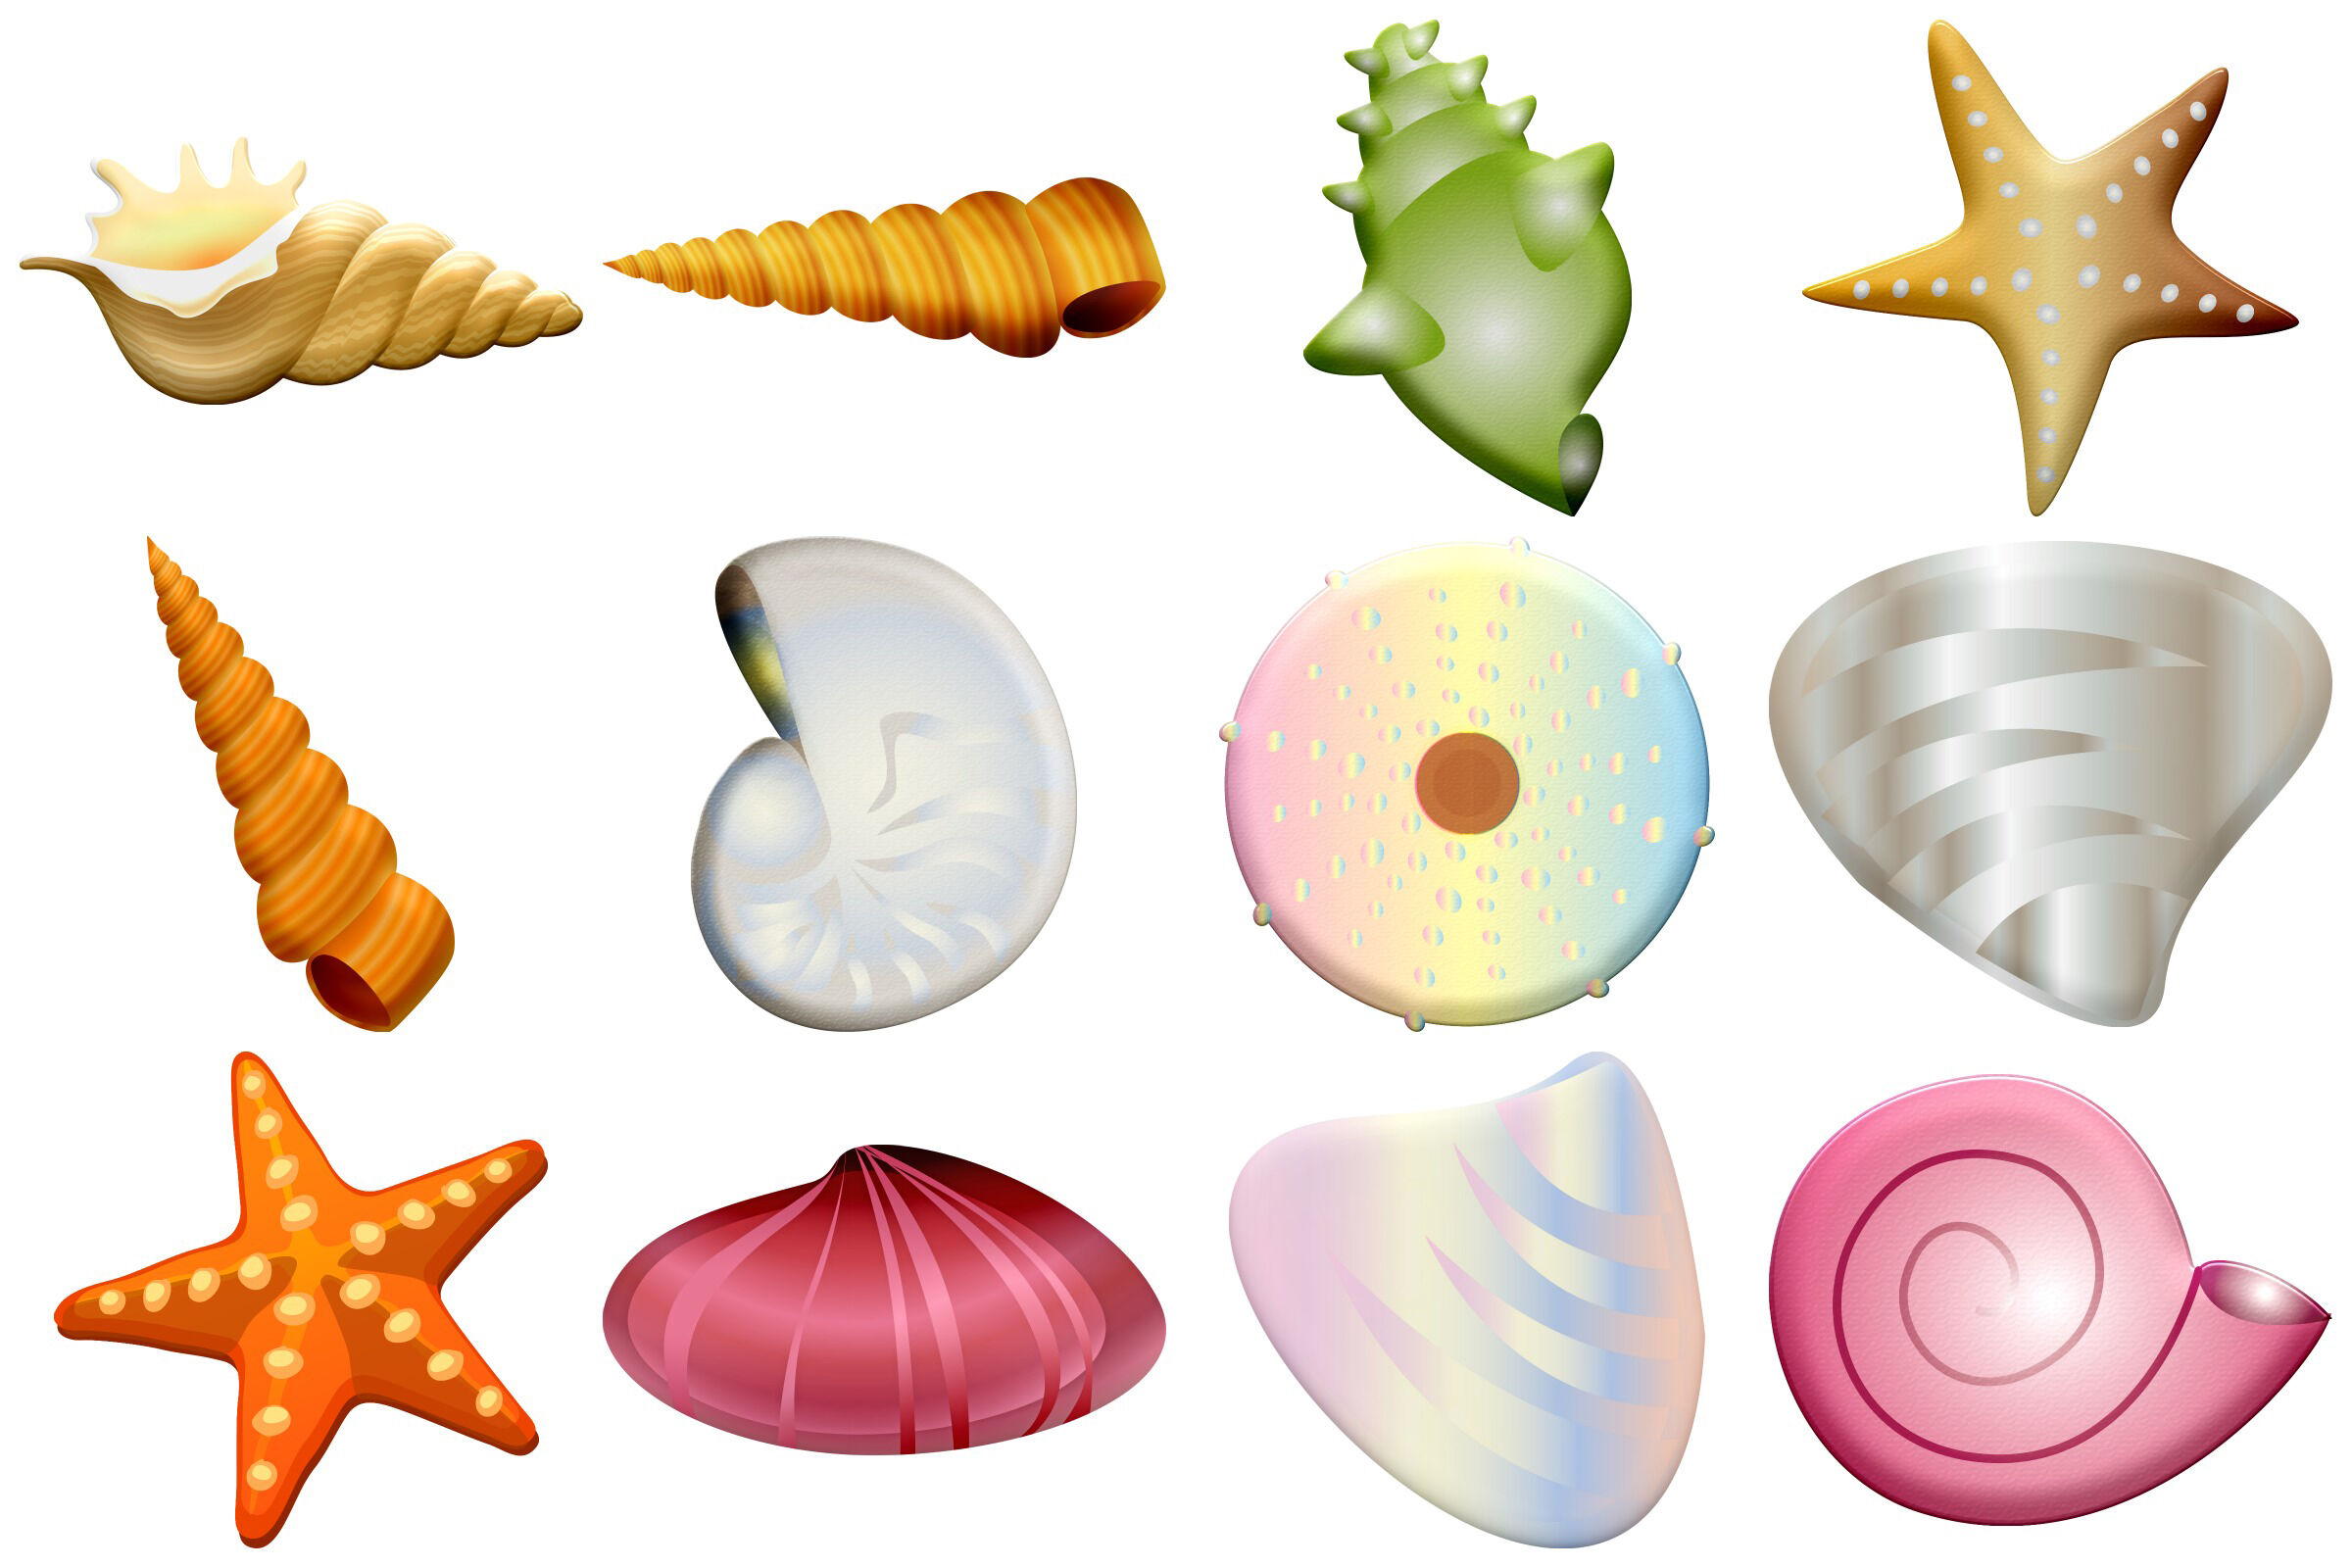 clip art seashells